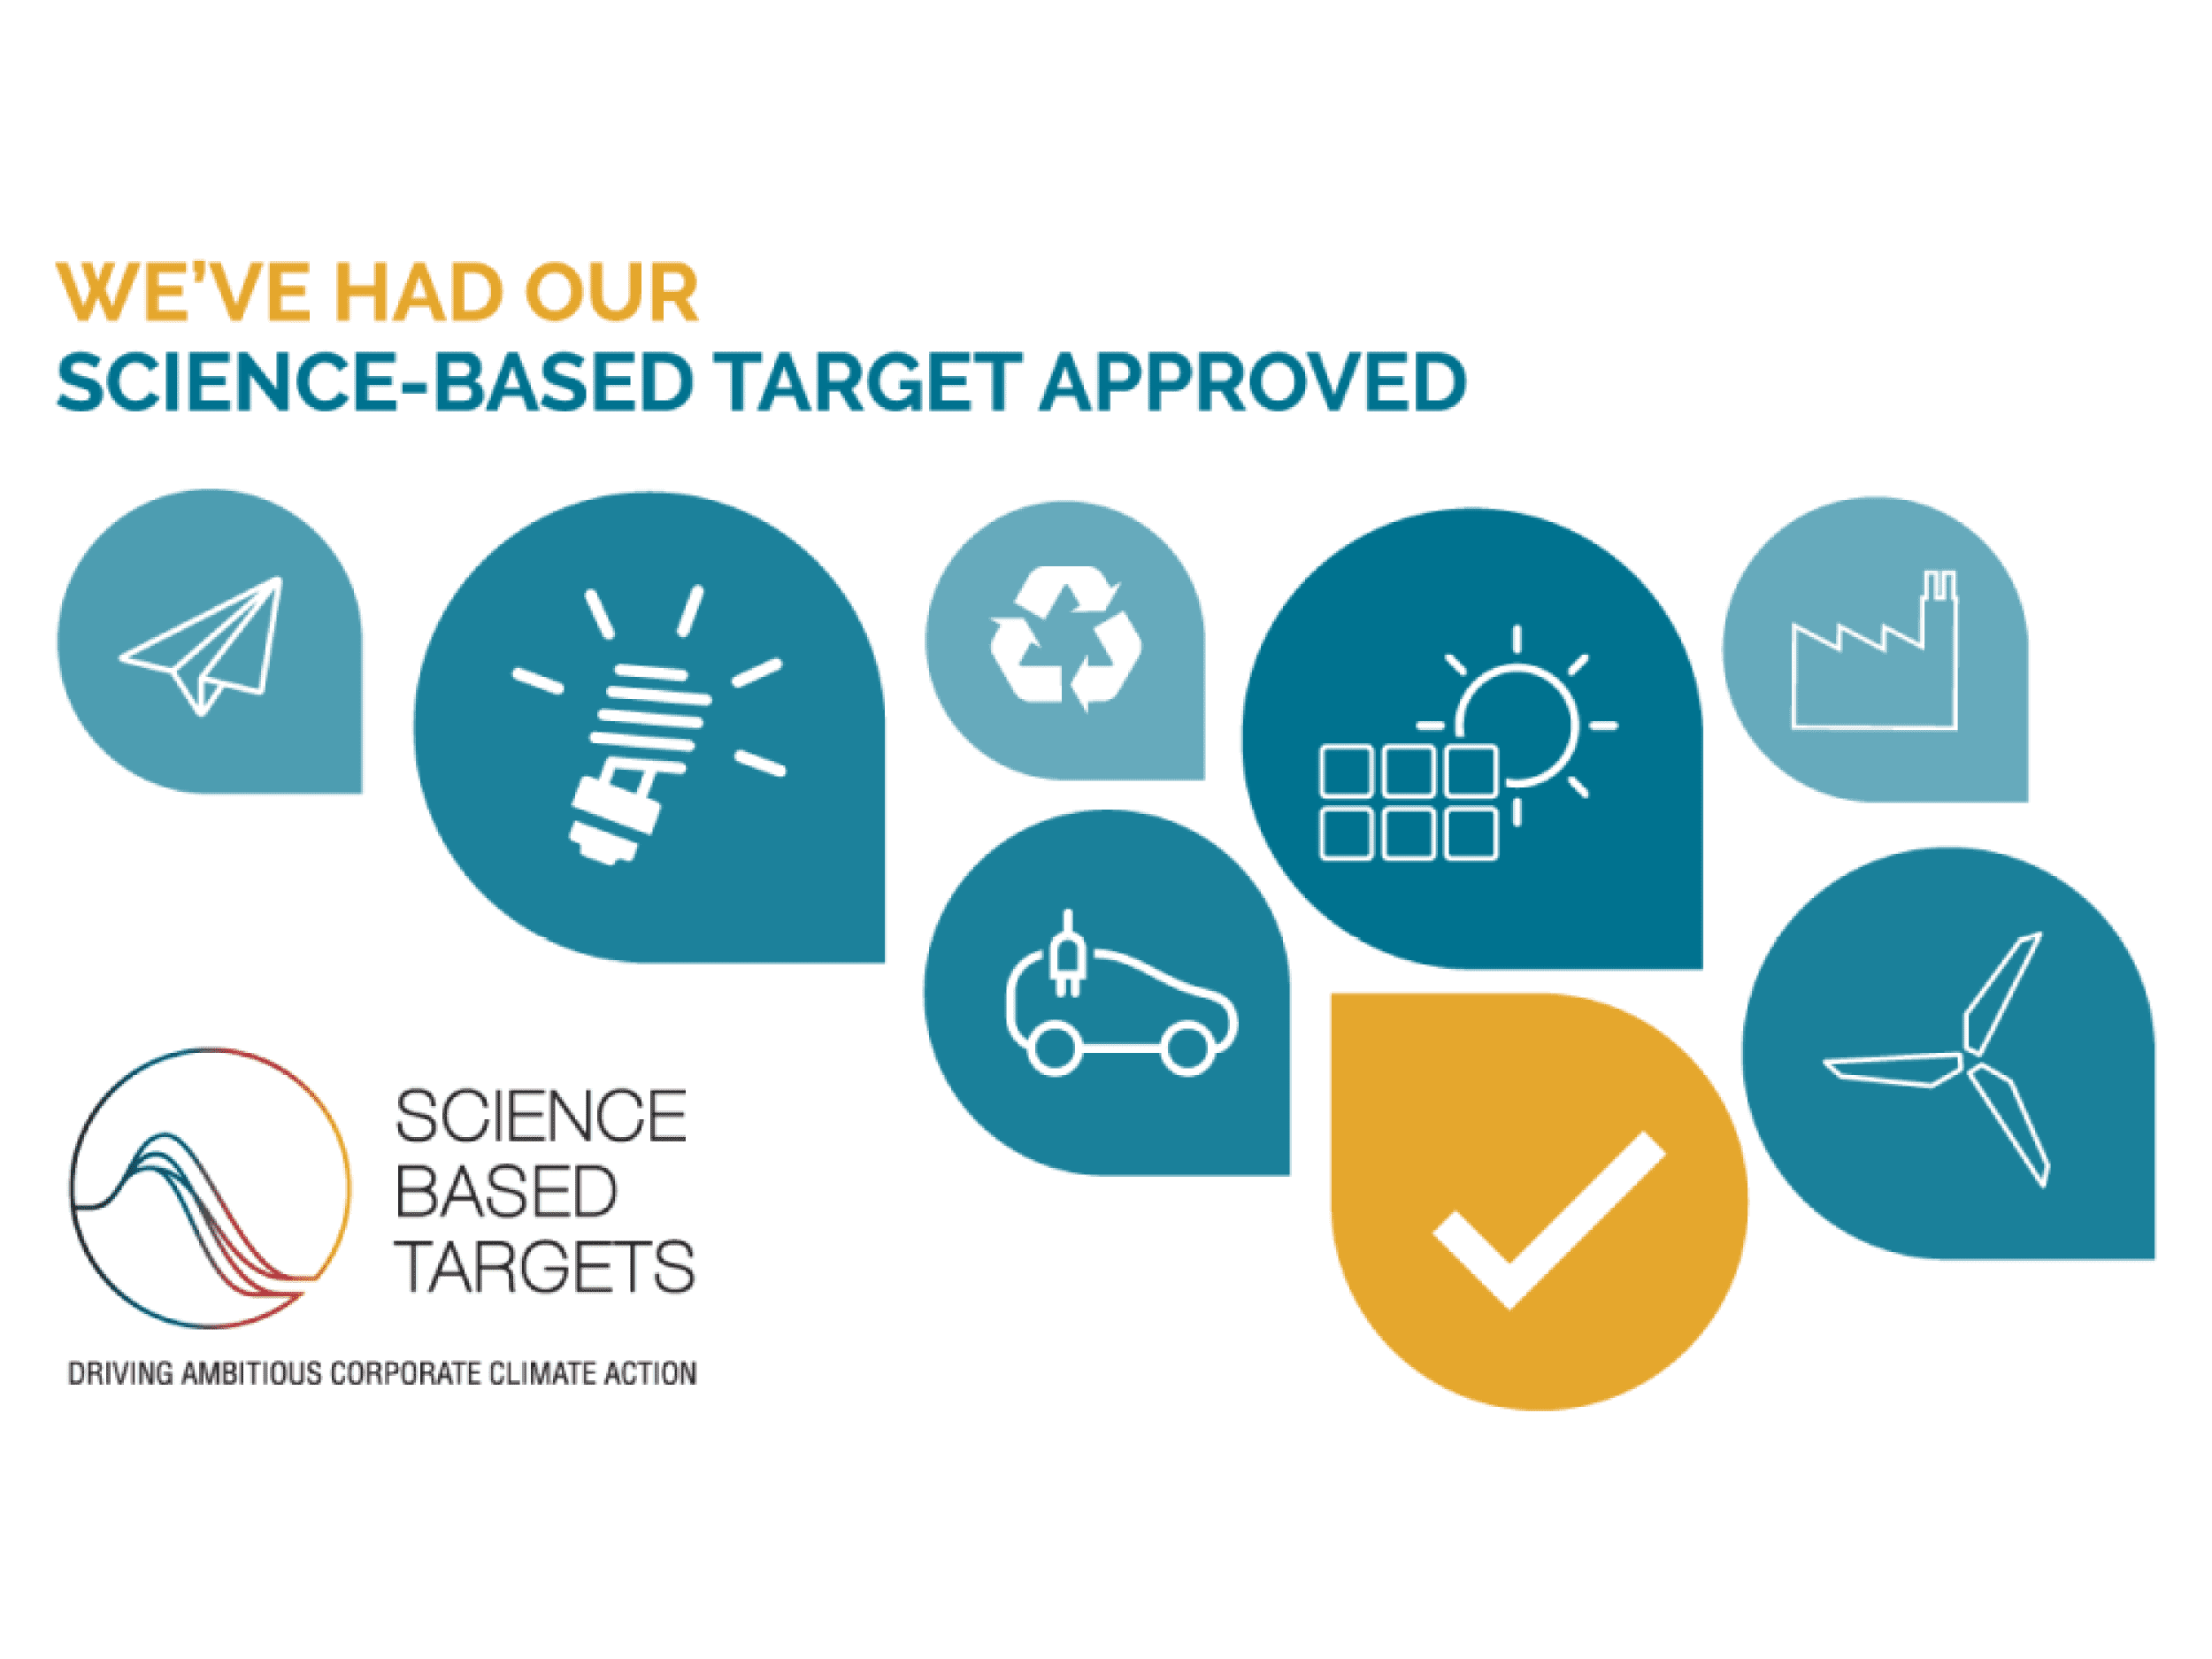 Die Treibhausgas-Reduktionsziele von Graphic Packaging wurden von der Science Based Targets initiative (SBTi) genehmigt, wodurch die Verpflichtung des Unternehmens zur Reduzierung seiner CO2-Emissionen bestätigt wurde.